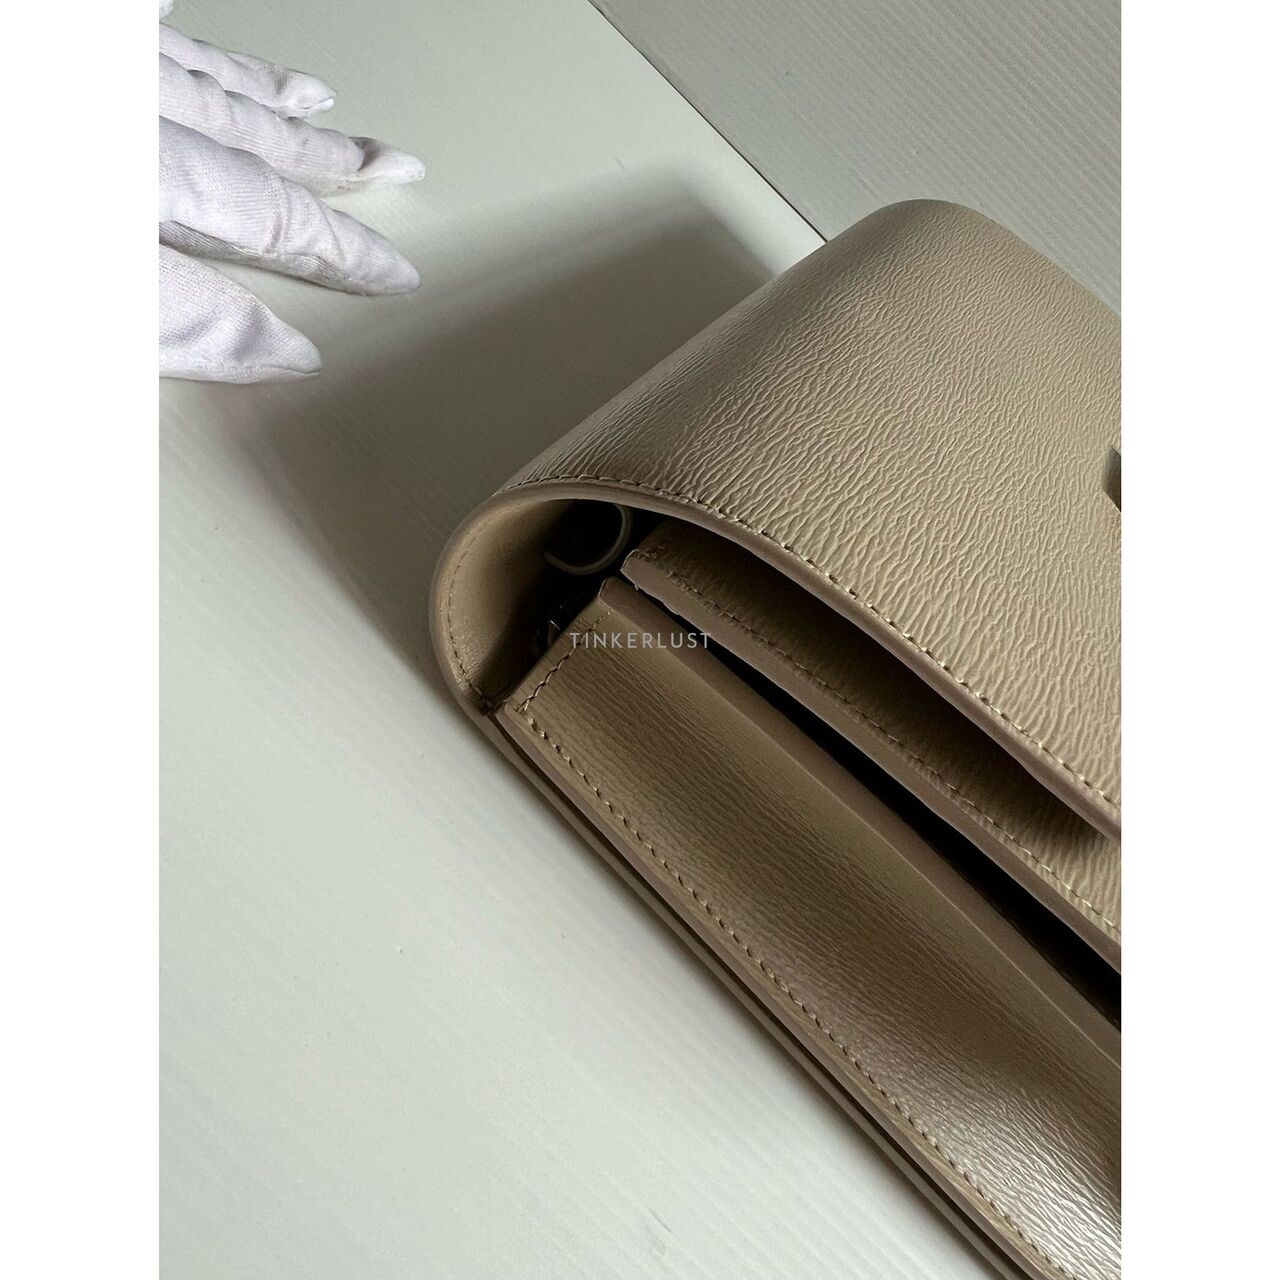 Celine Box Nude Grained Leather 2017 Shoulder Bag